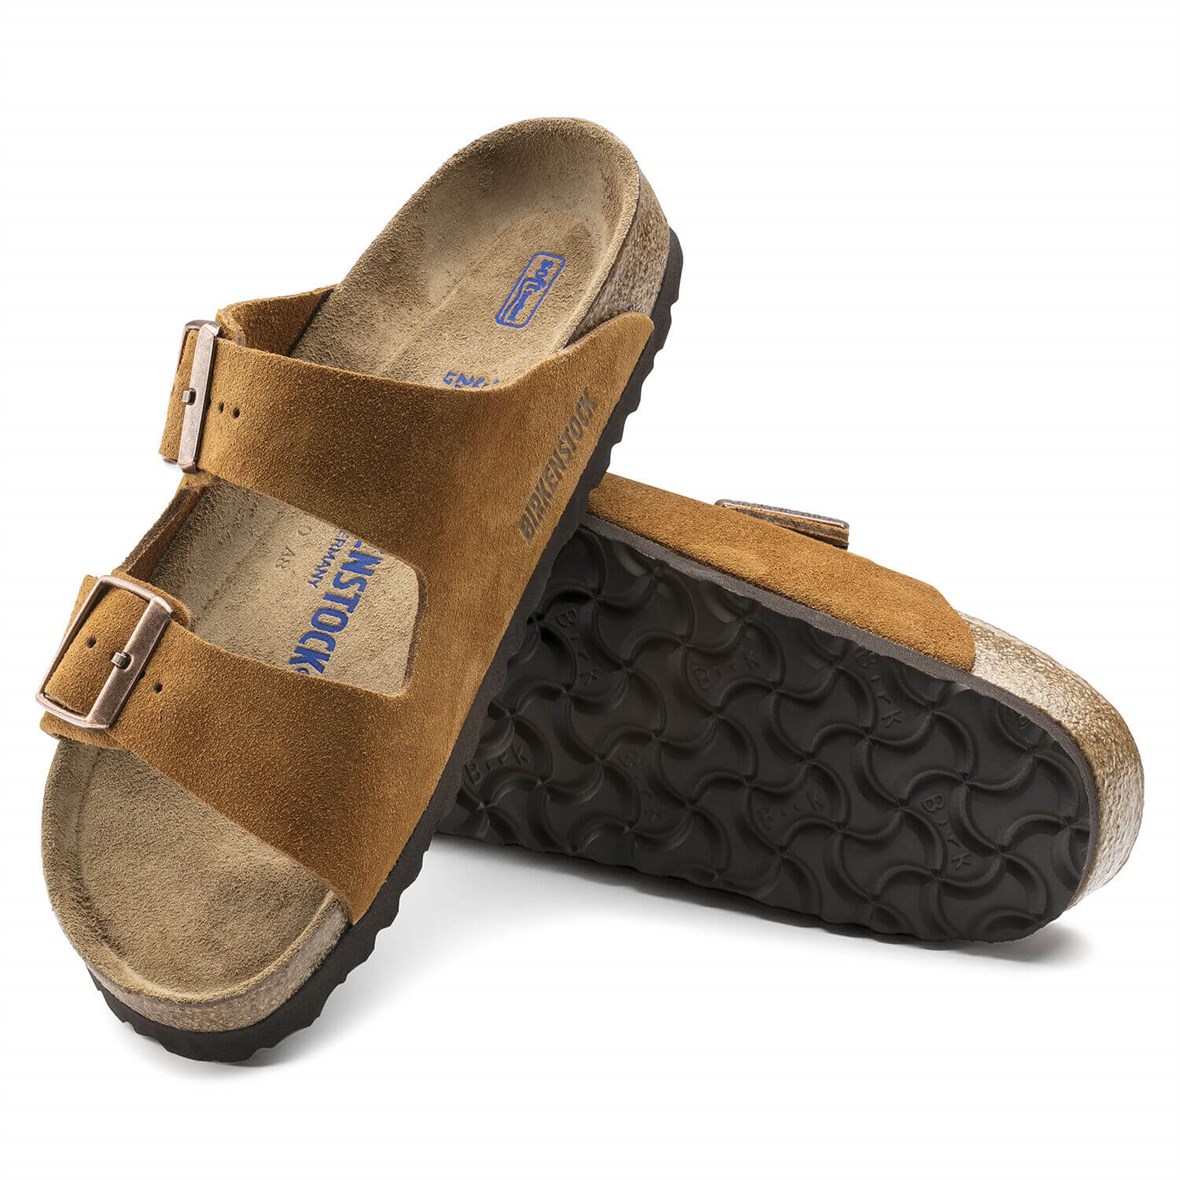 Birkenstock Arizona Soft Footbed Bayan Terlik & Sandalet - Mink